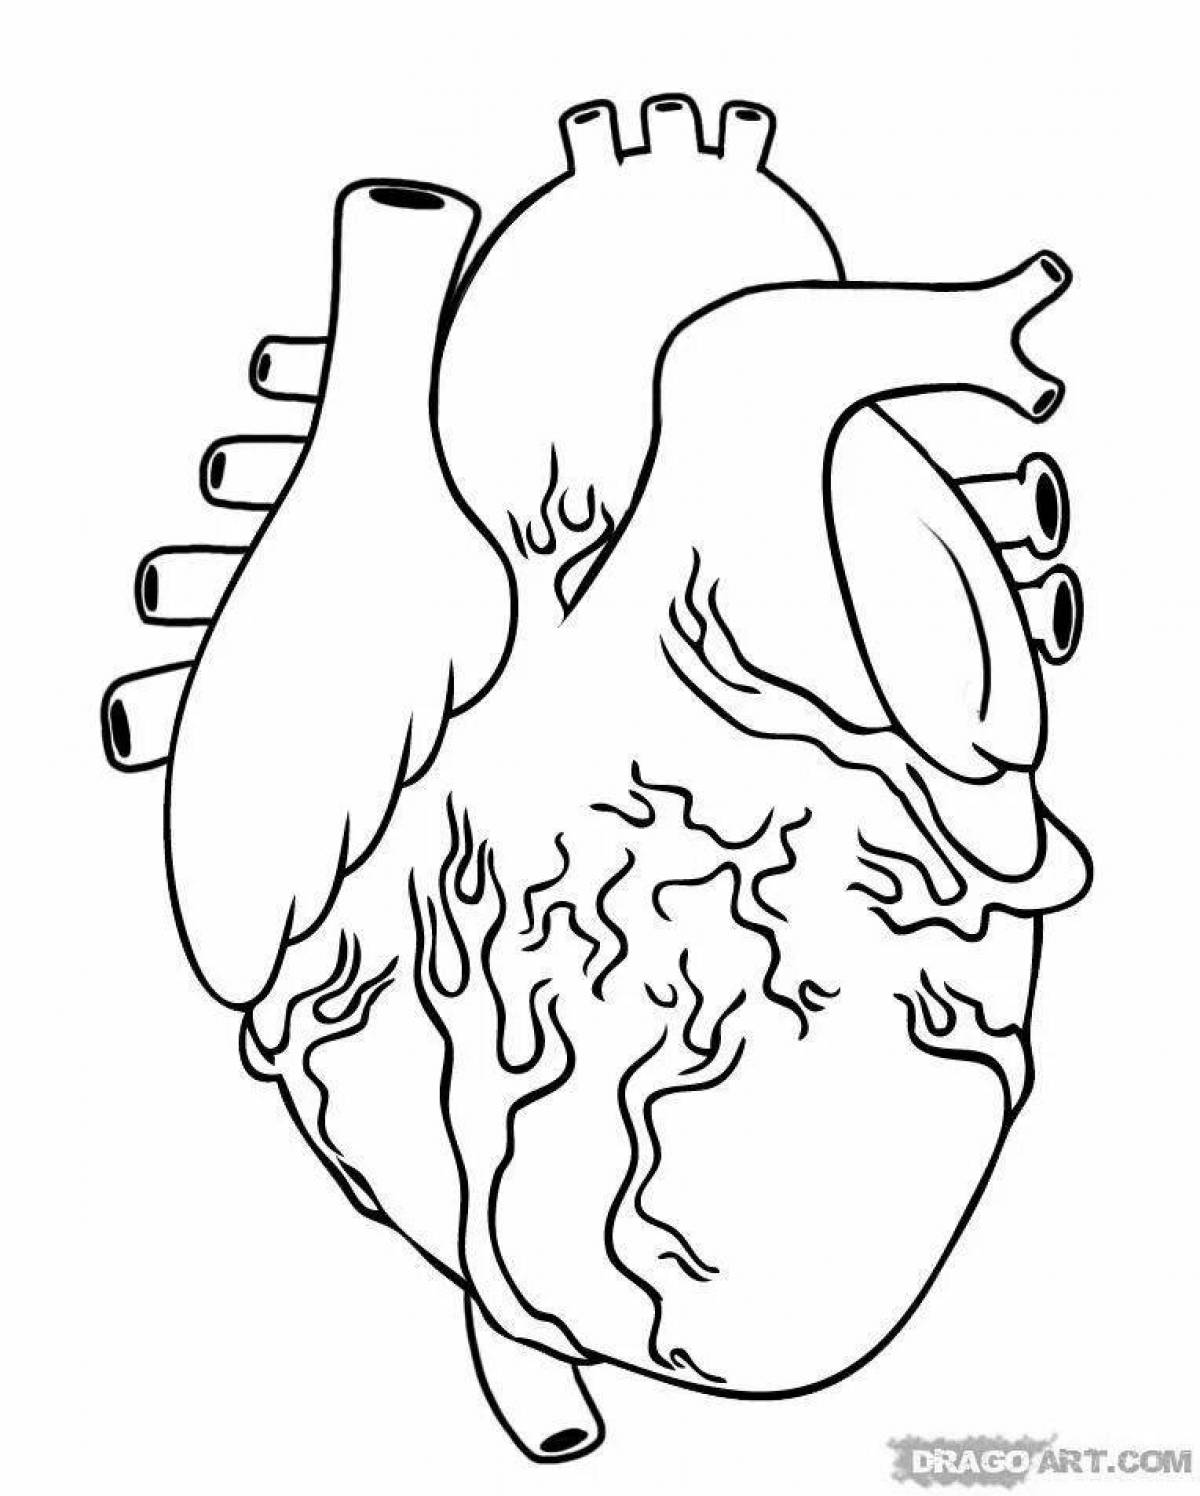 Фото Блестящая страница раскраски анатомического сердца